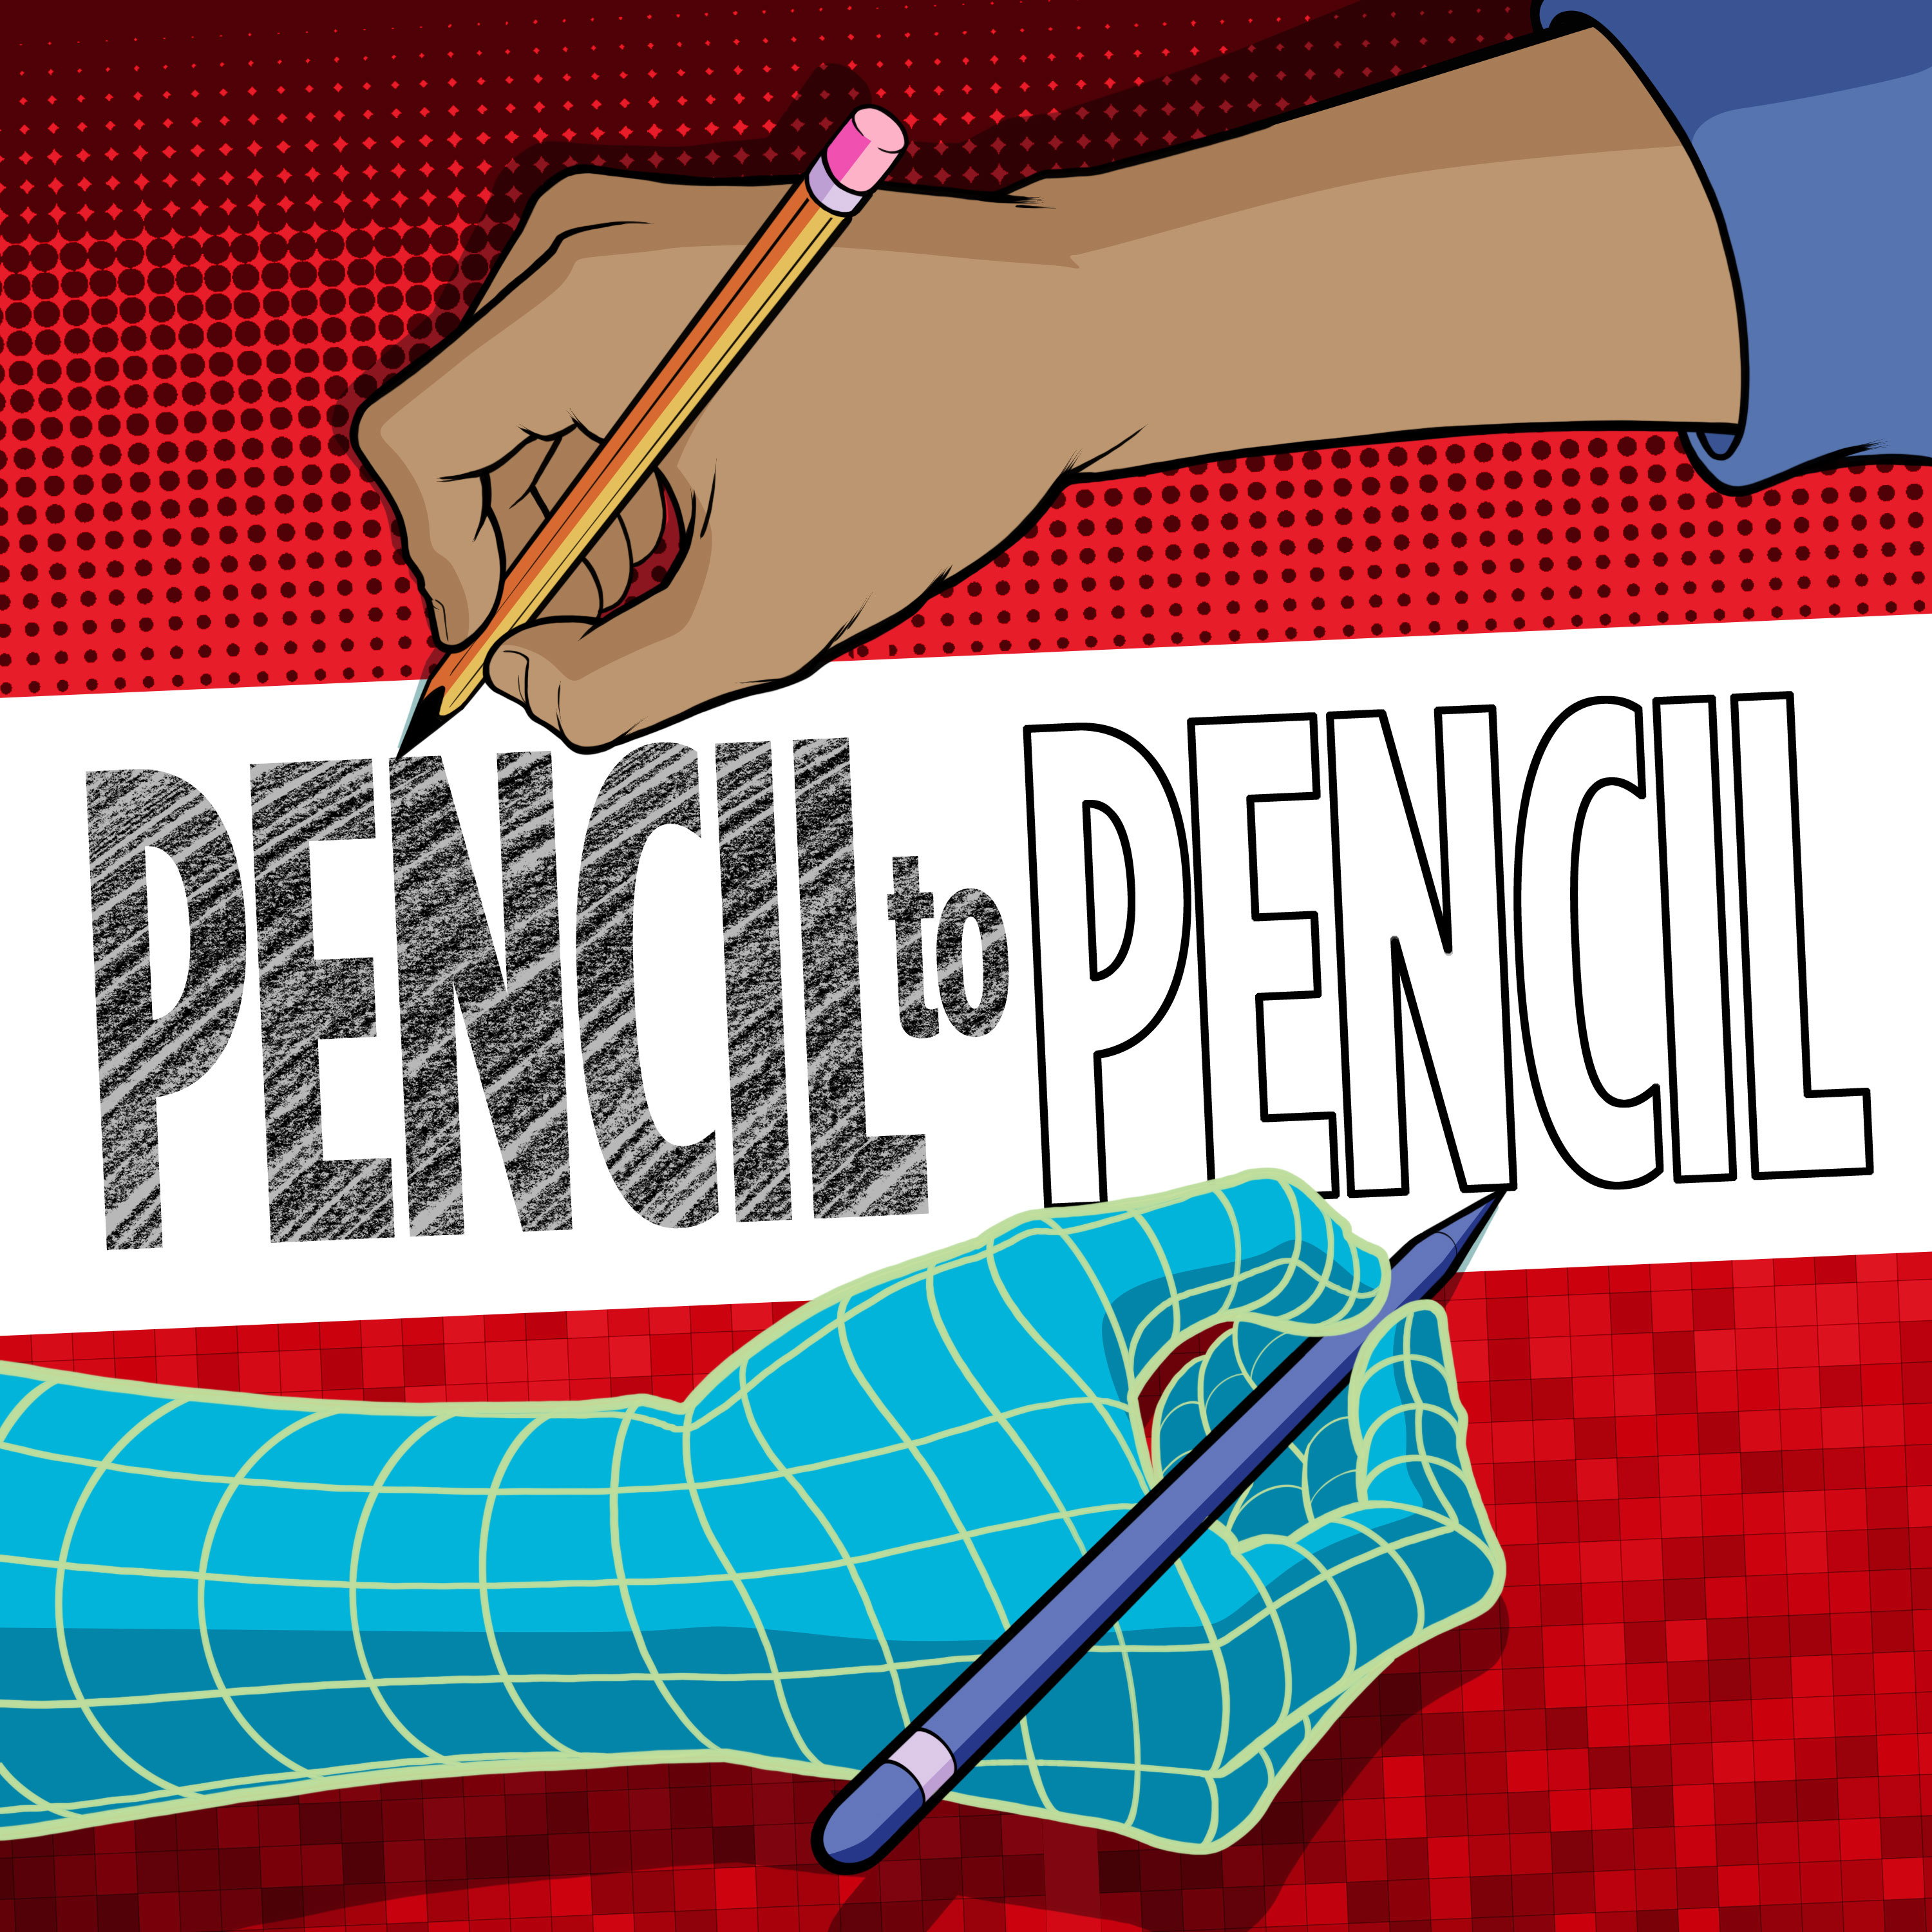 Pencil to Pencil